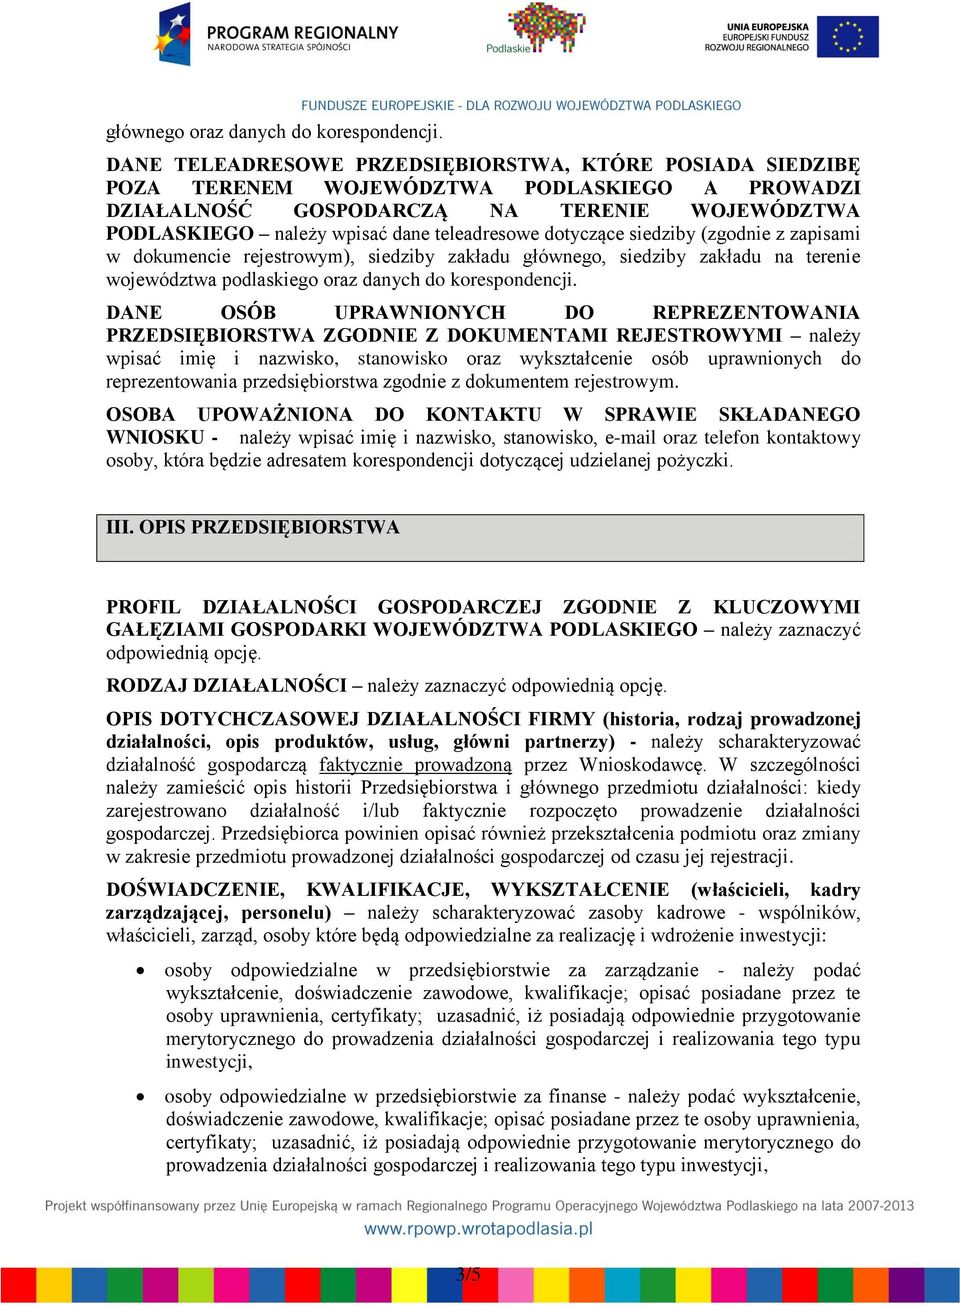 dotyczące siedziby (zgodnie z zapisami w dokumencie rejestrowym), siedziby zakładu głównego, siedziby zakładu na terenie województwa podlaskiego oraz danych do korespondencji.